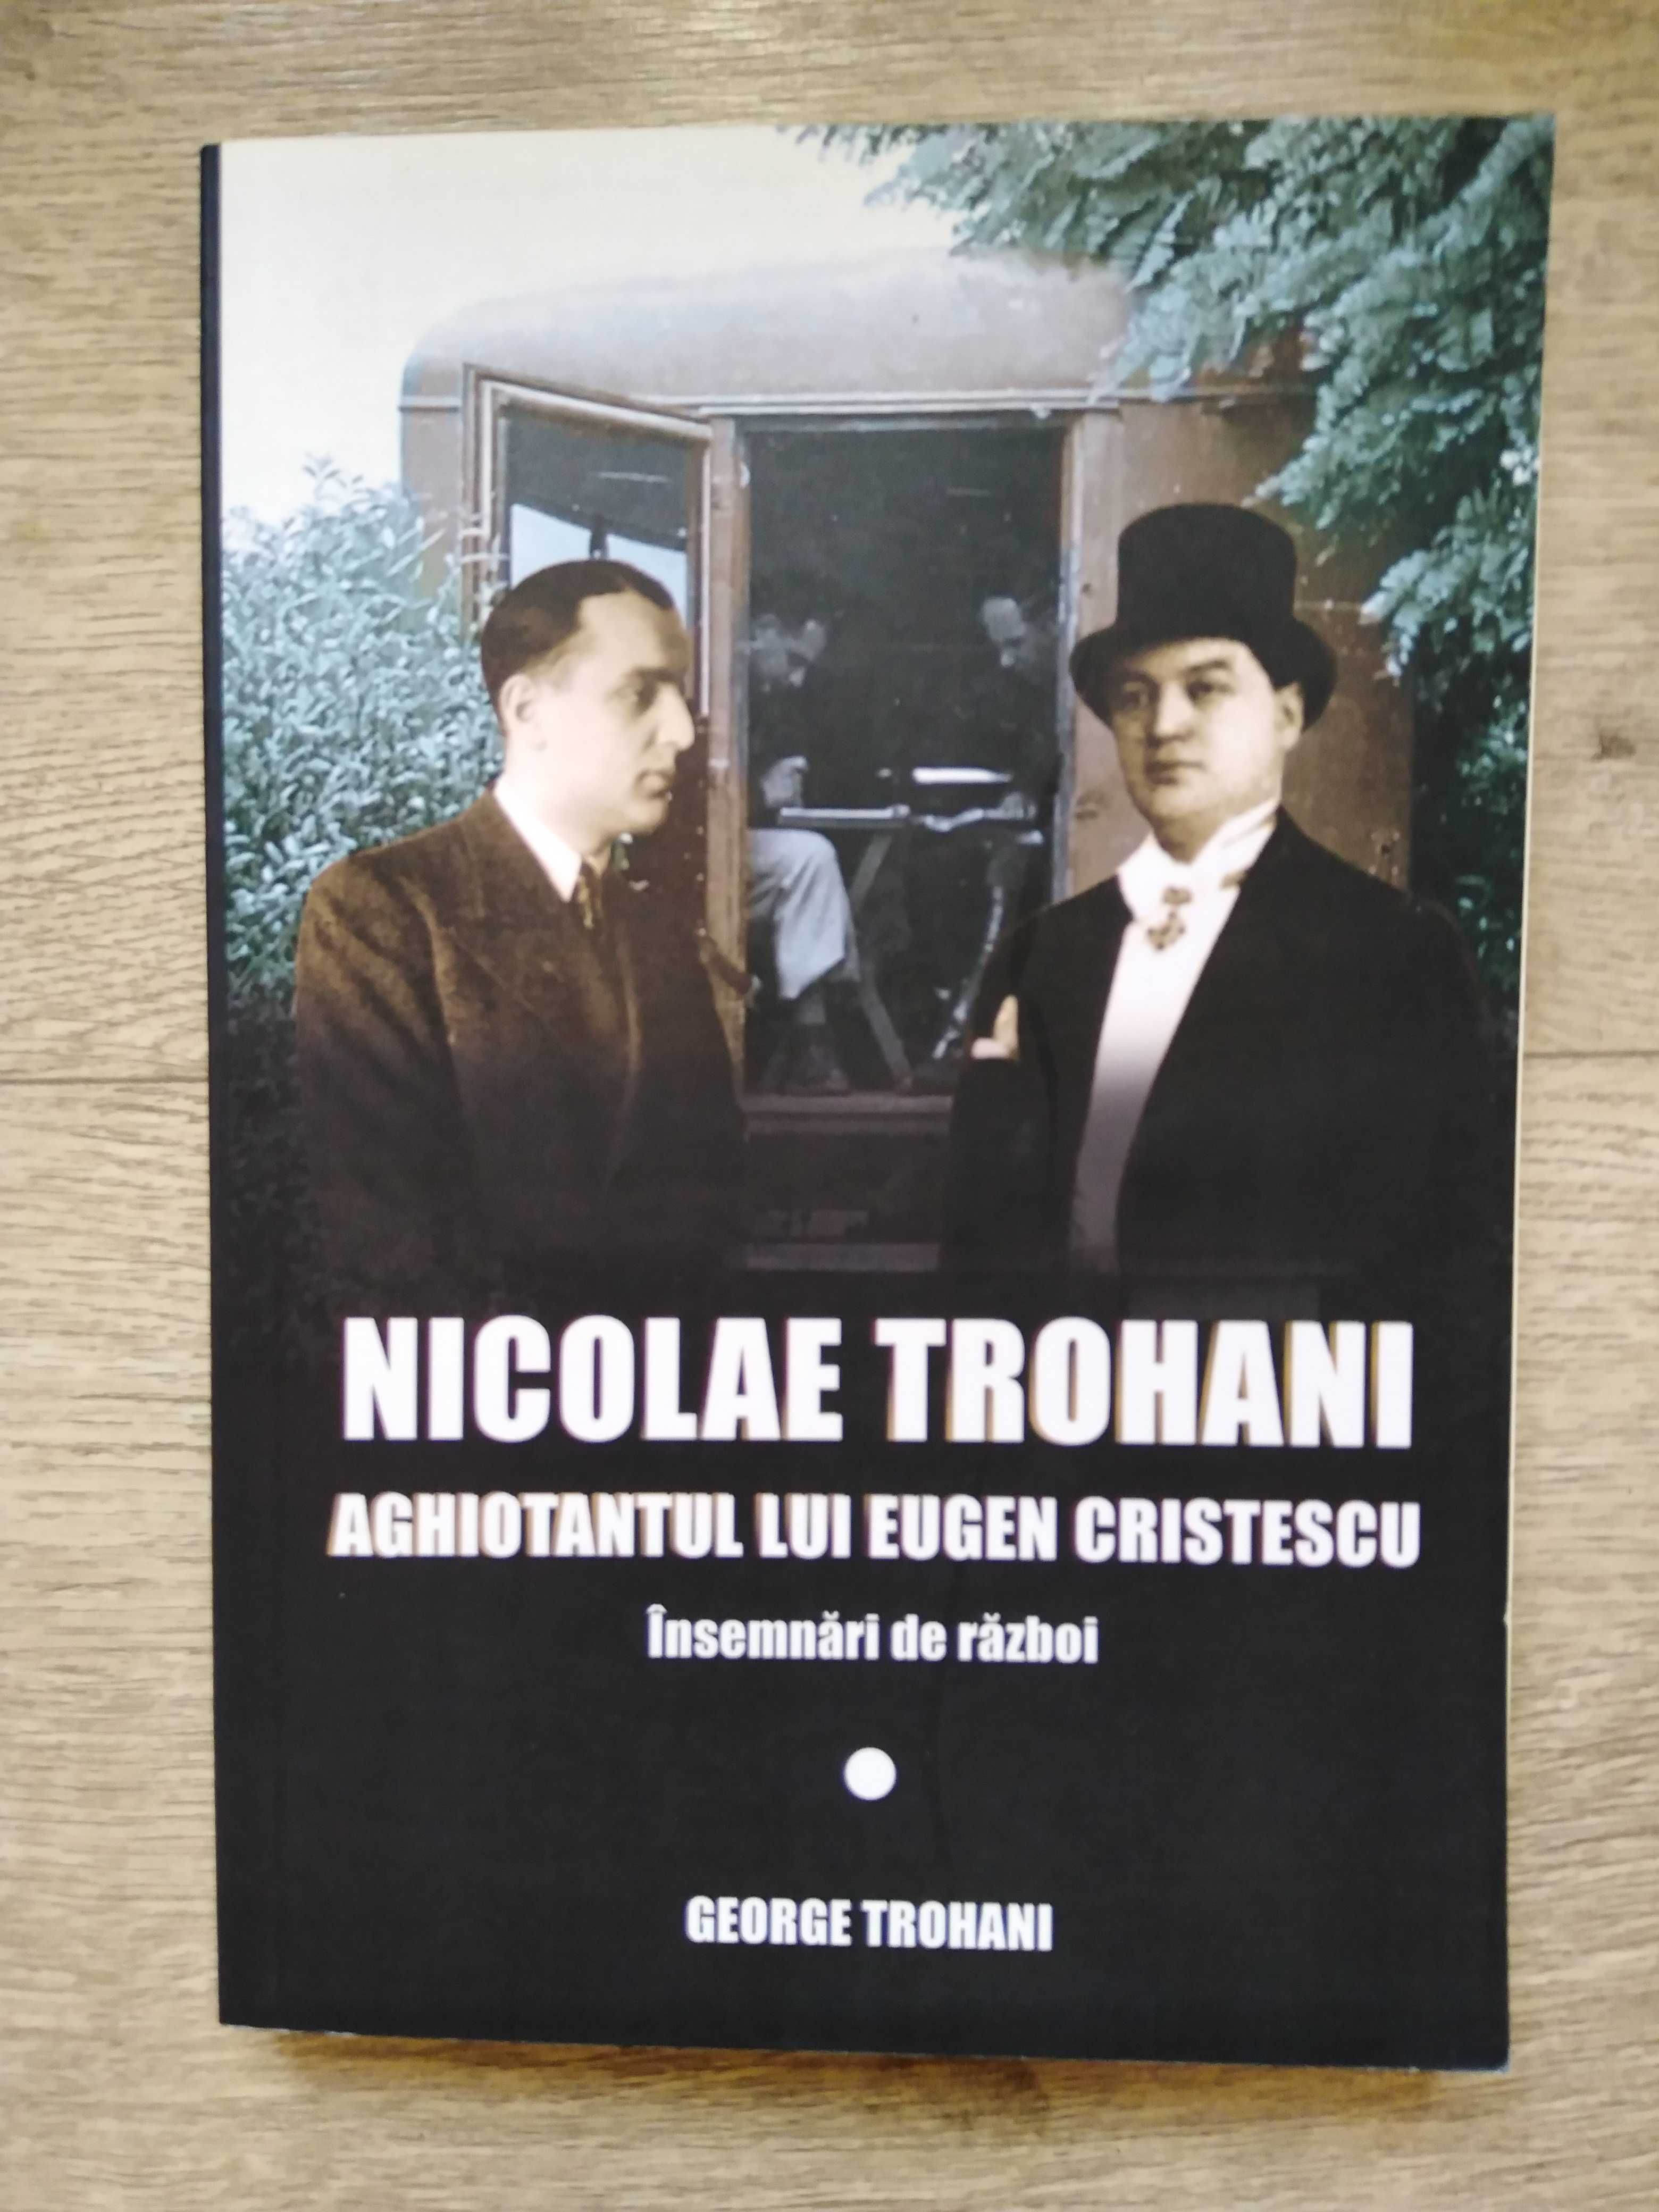 Nicolae Trohani, aghiotantul lui Eugen Cristescu